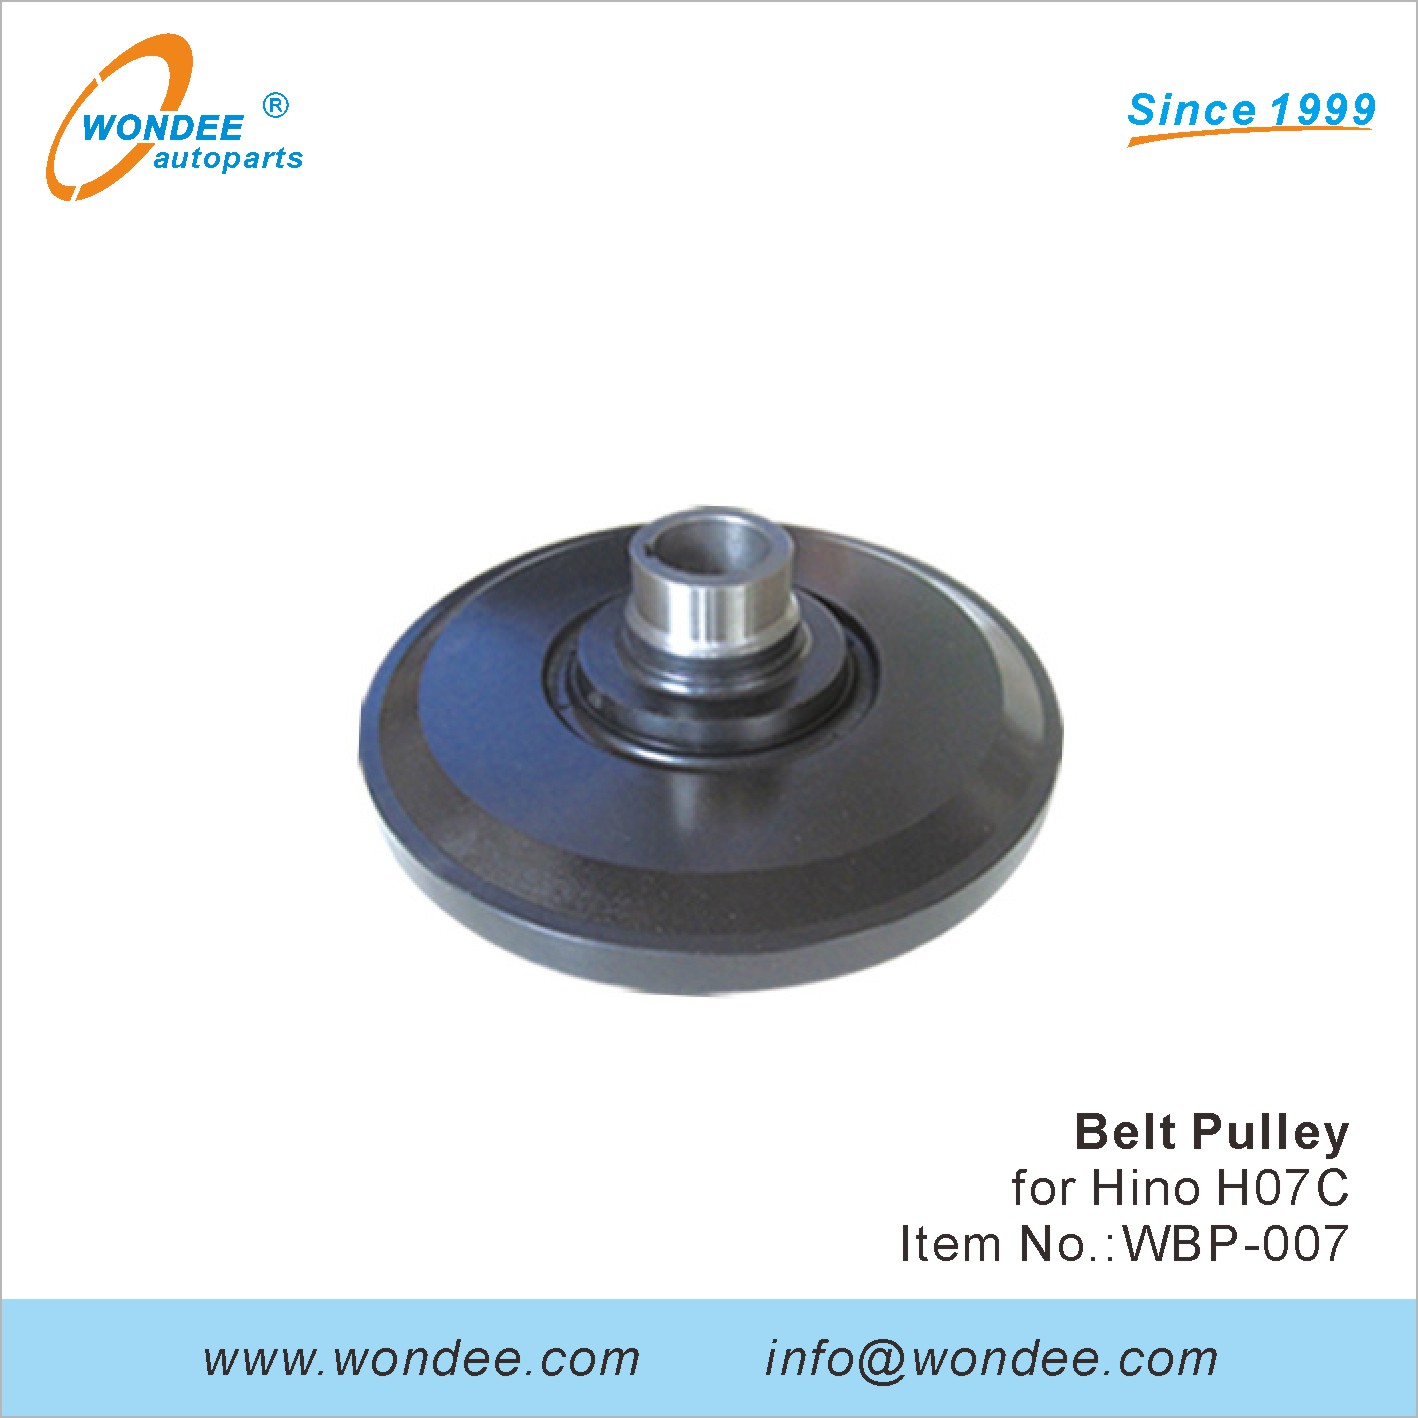 WONDEE Belt Pulley (7)